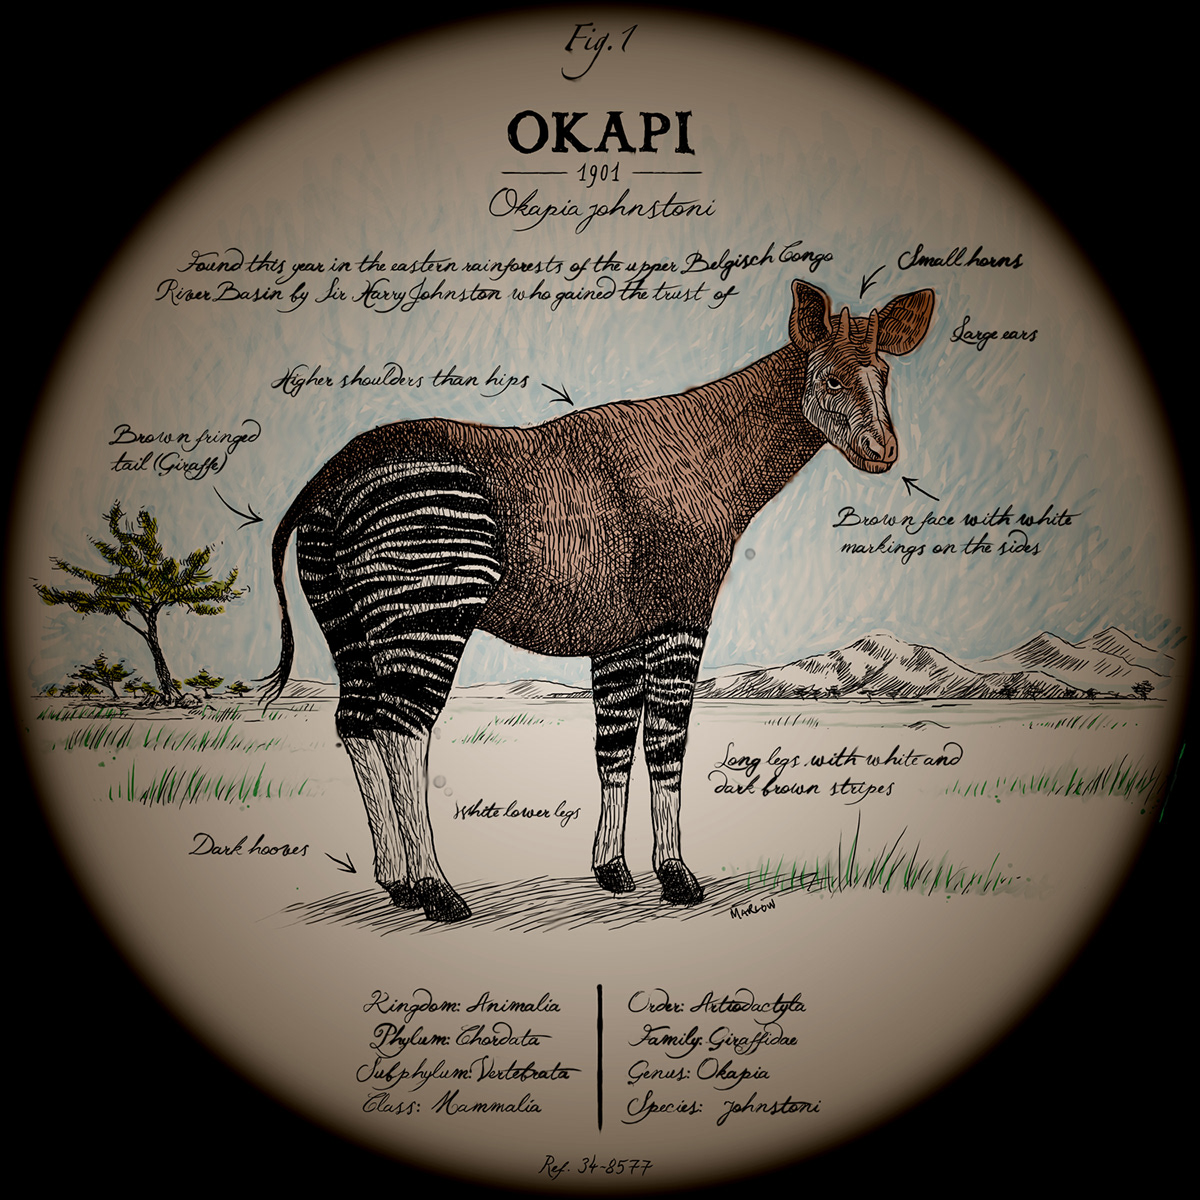 The Ningyo cryptozoology spieces animal vintage magic lantern adventure okapi ningyō Melusine